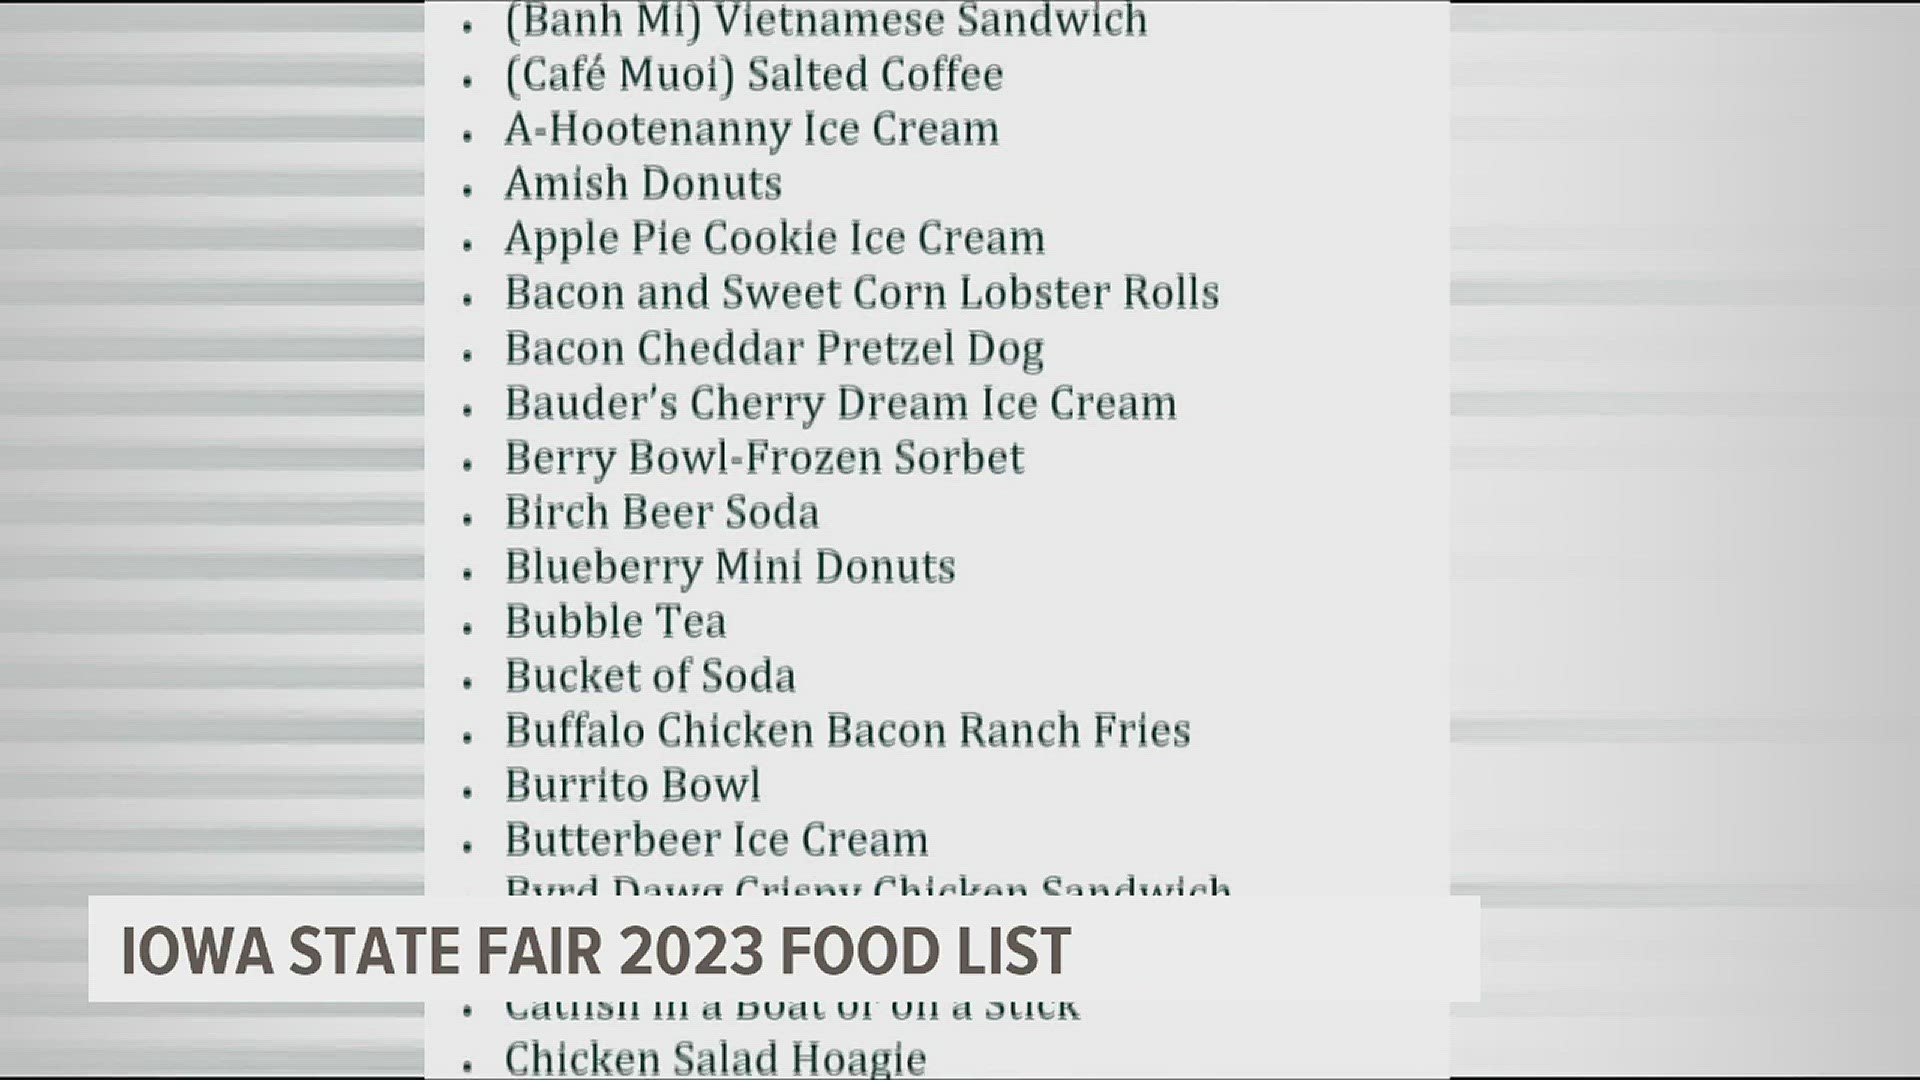 Food list for 2023 Iowa State Fair announced